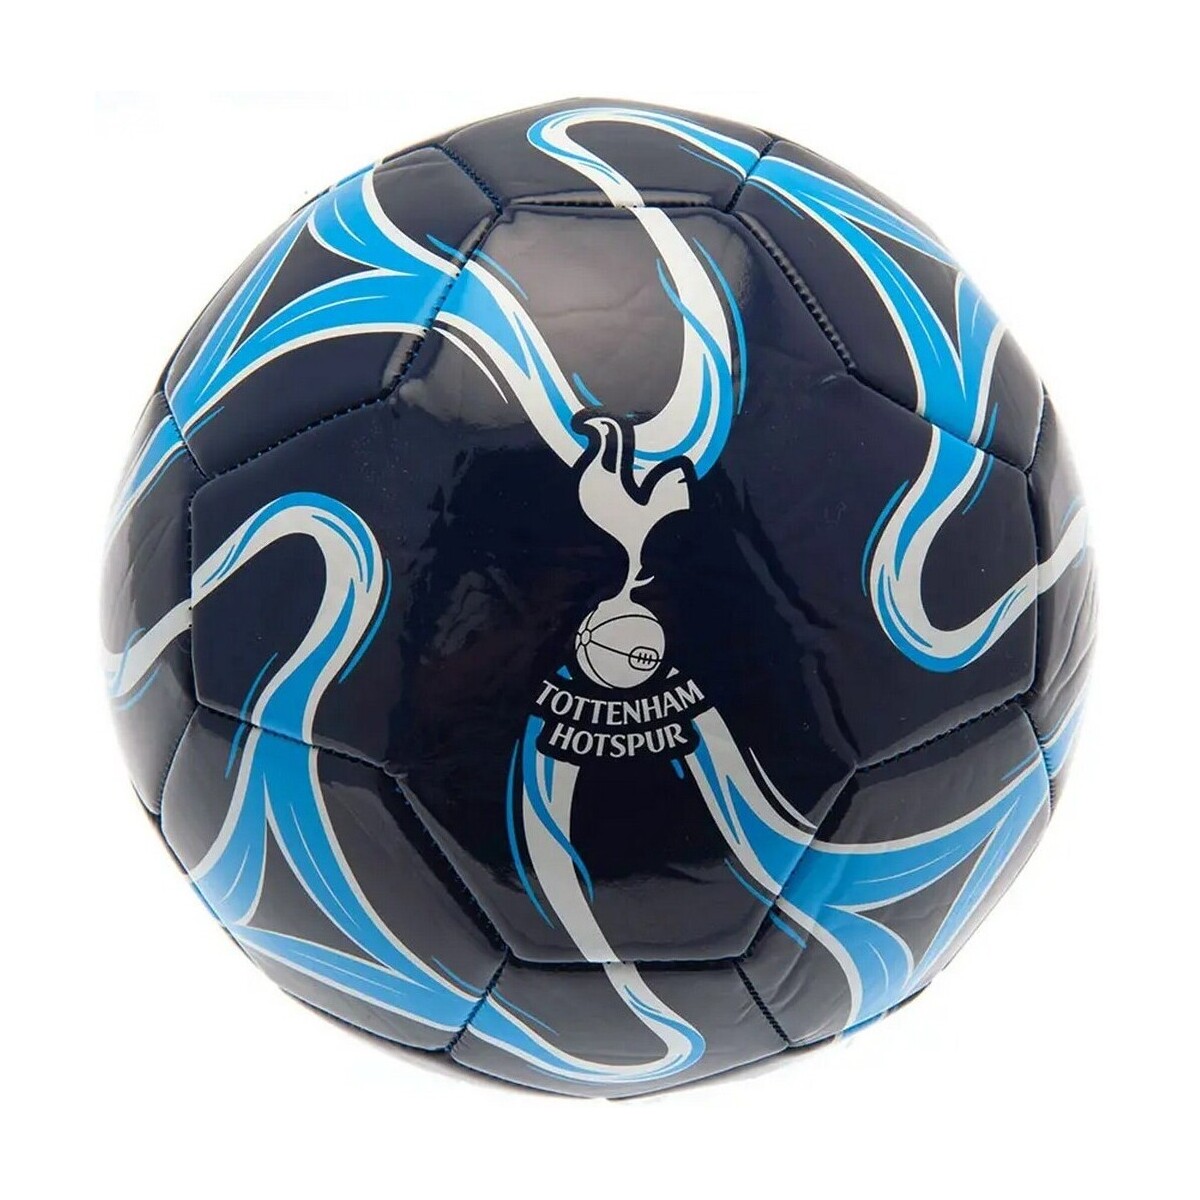 Accesorios Complemento para deporte Tottenham Hotspur Fc Cosmos Azul